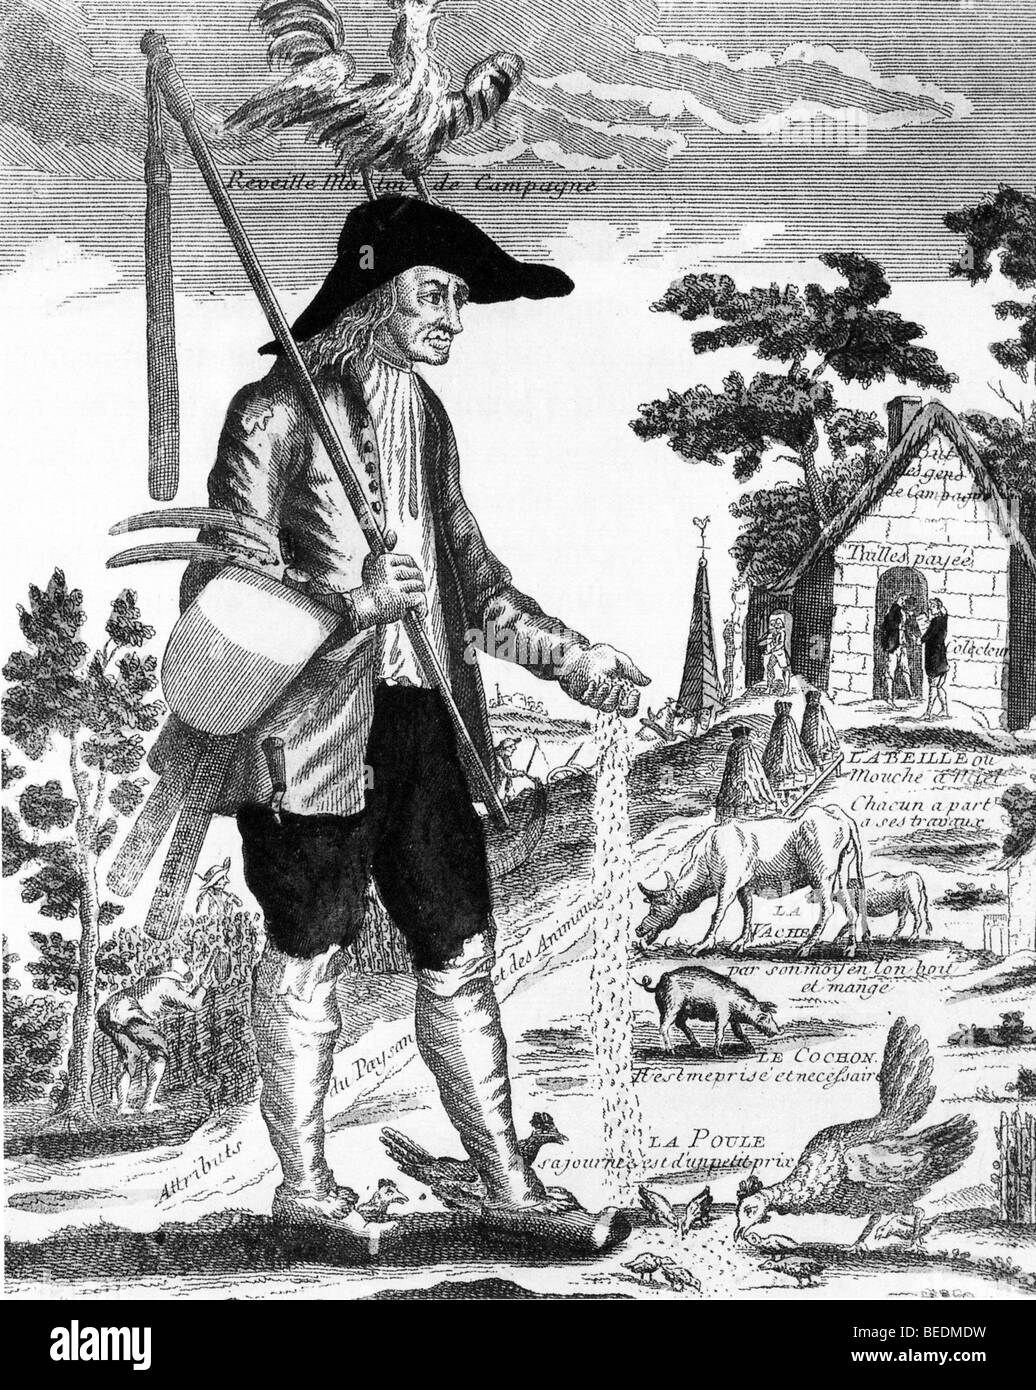 FRANZÖSISCHE Bauern - 18. Jahrhundert Karikatur veranschaulicht die schlechten Arbeits- und Lebensbedingungen der Bauern – siehe Beschreibung unten Stockfoto